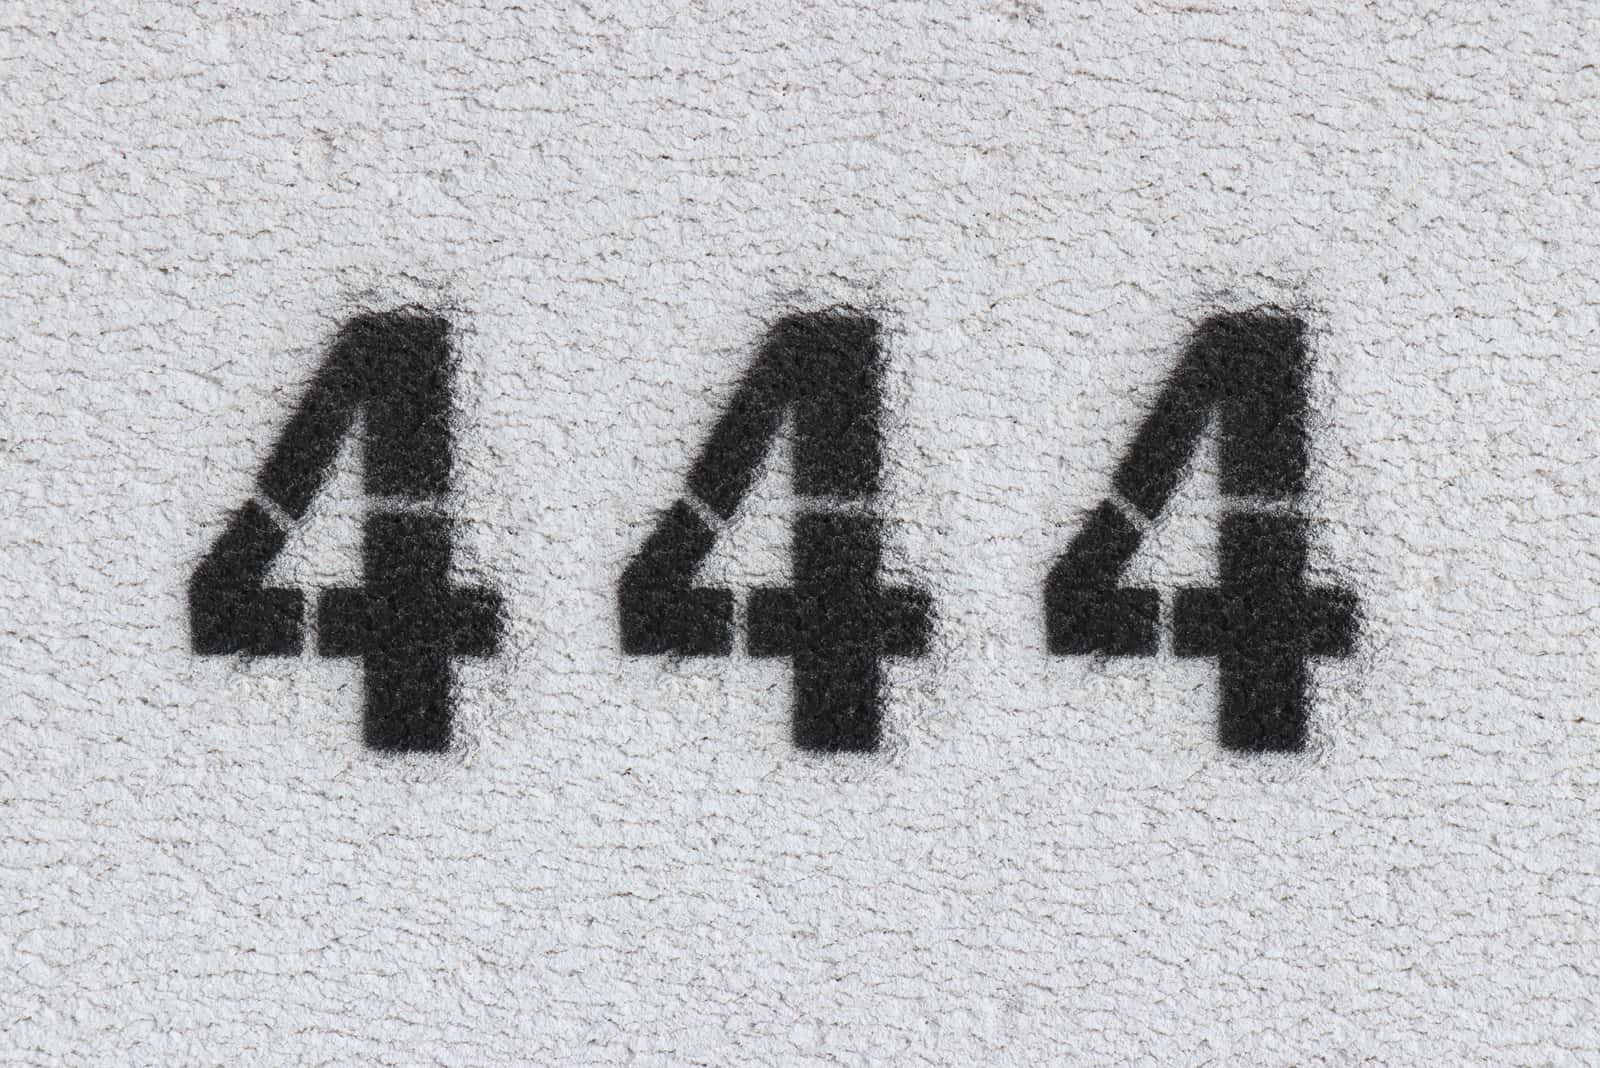 numero nero 444 sul muro grigio